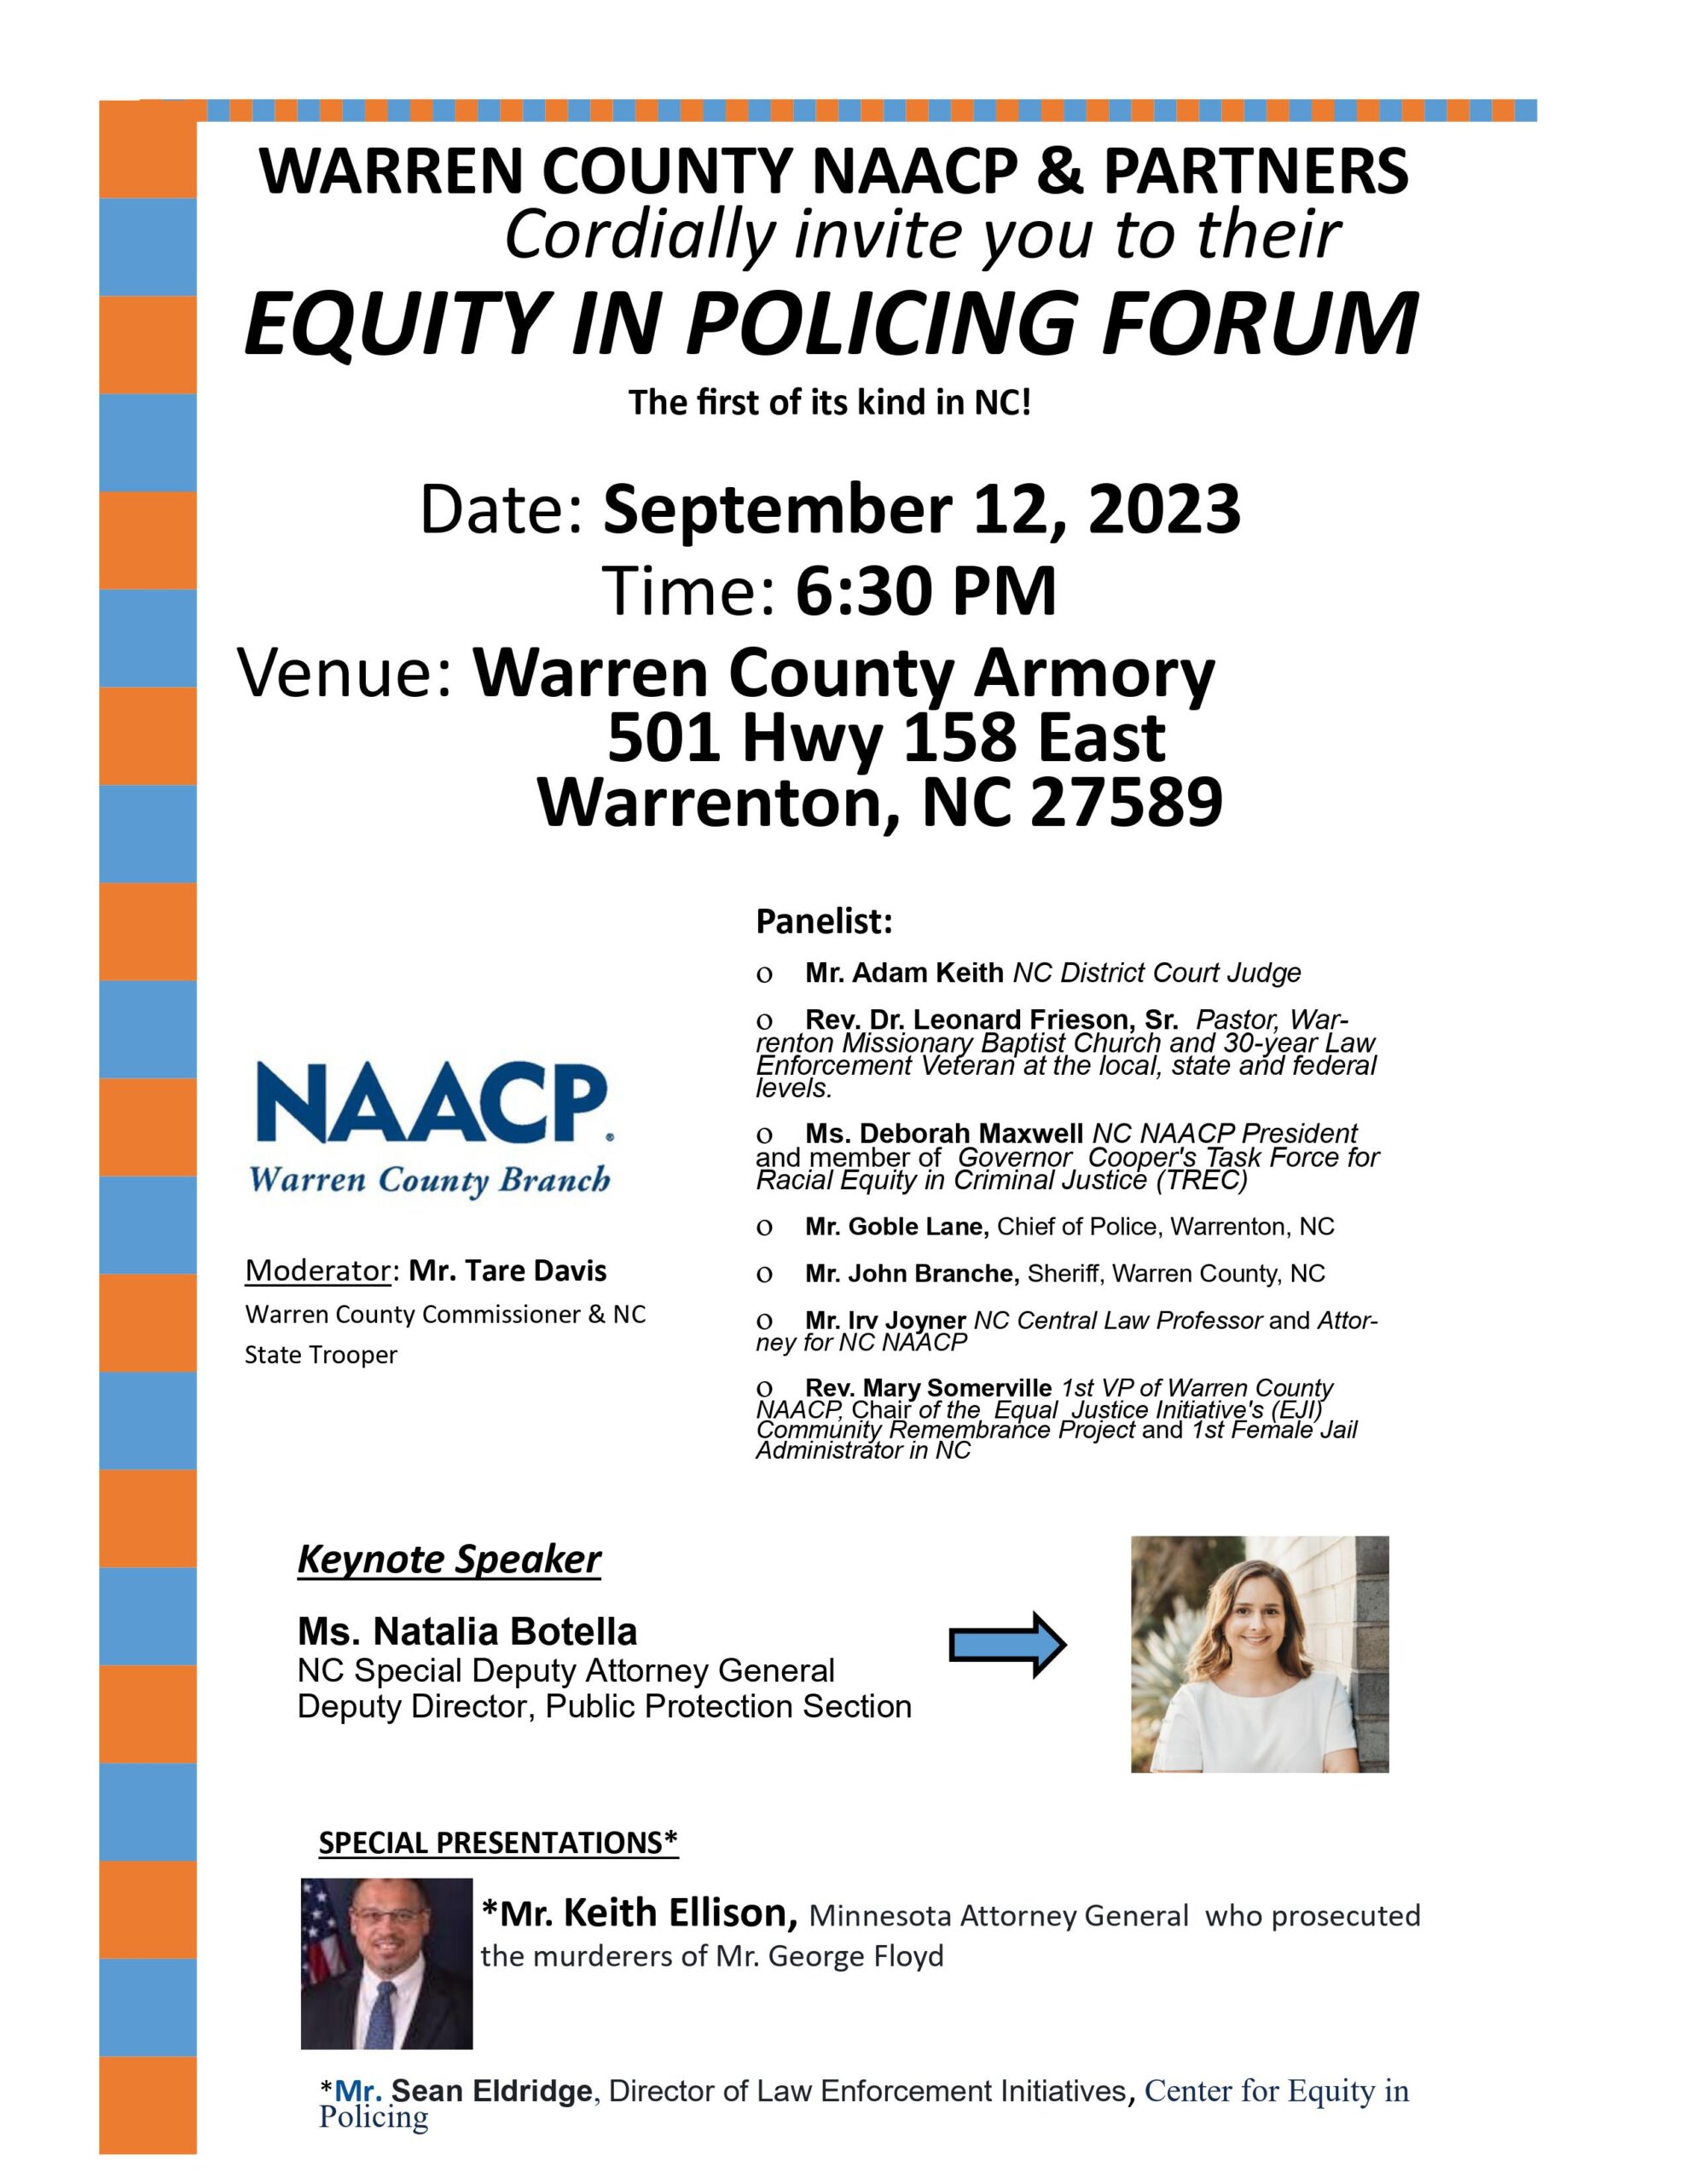 Equity in Policing Forum naacp warren county warrenton nc september 12 2023